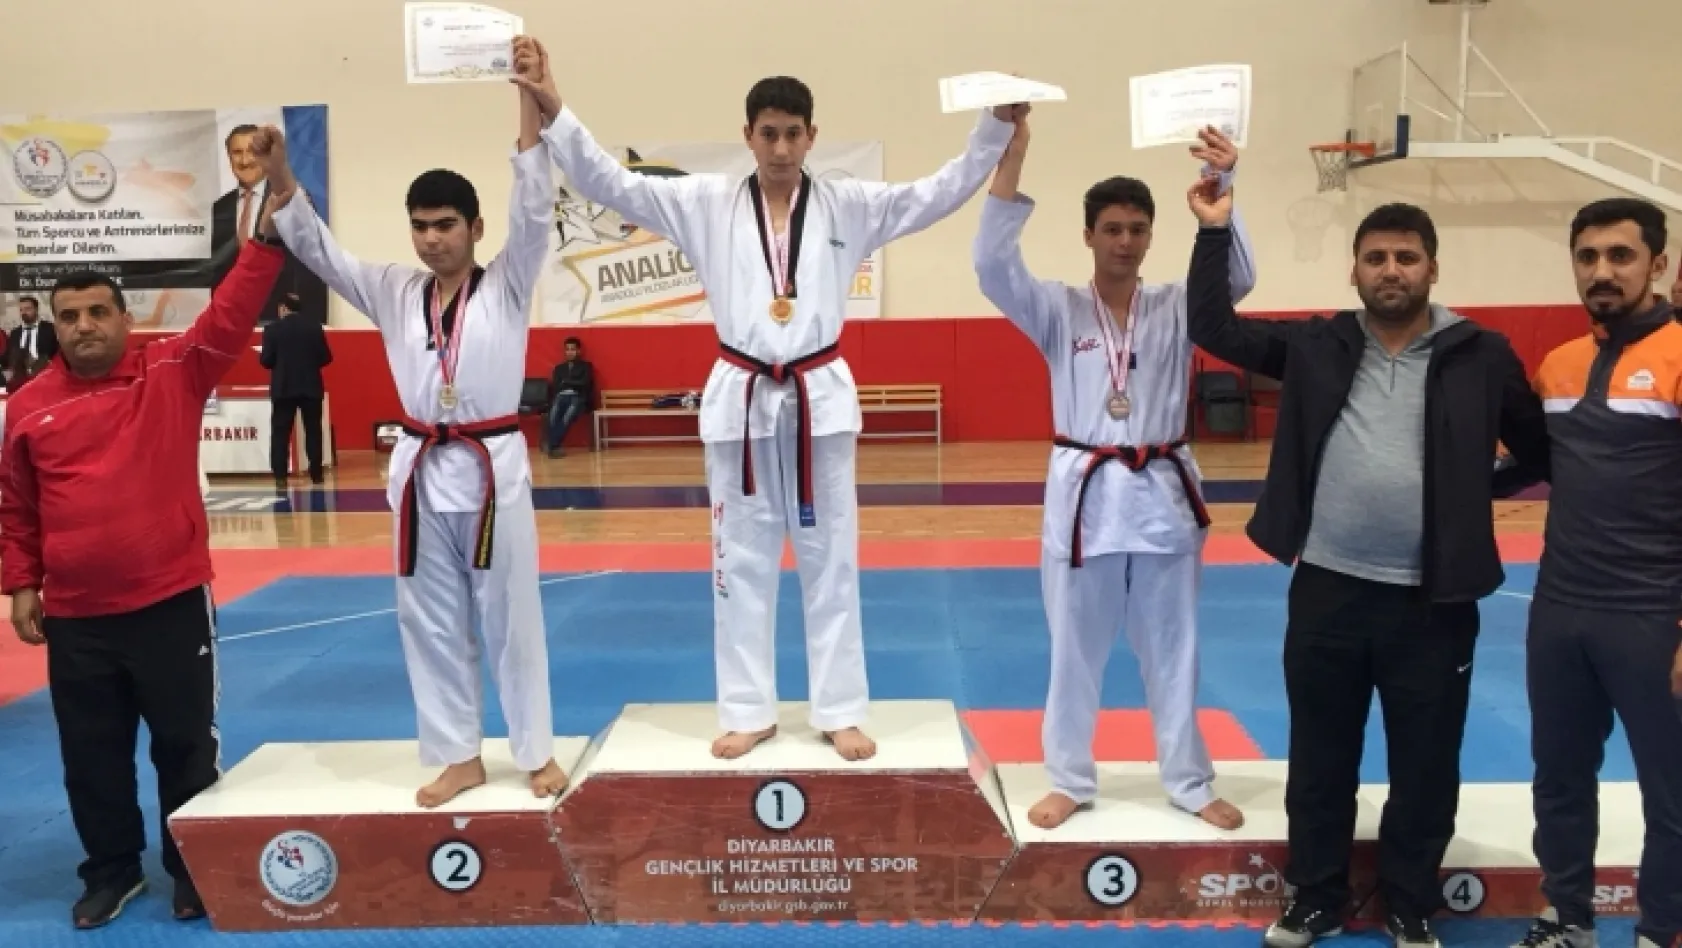 Elazığ Belediyesi Ulaşım Spor Kulübü sporcuları birinci oldu